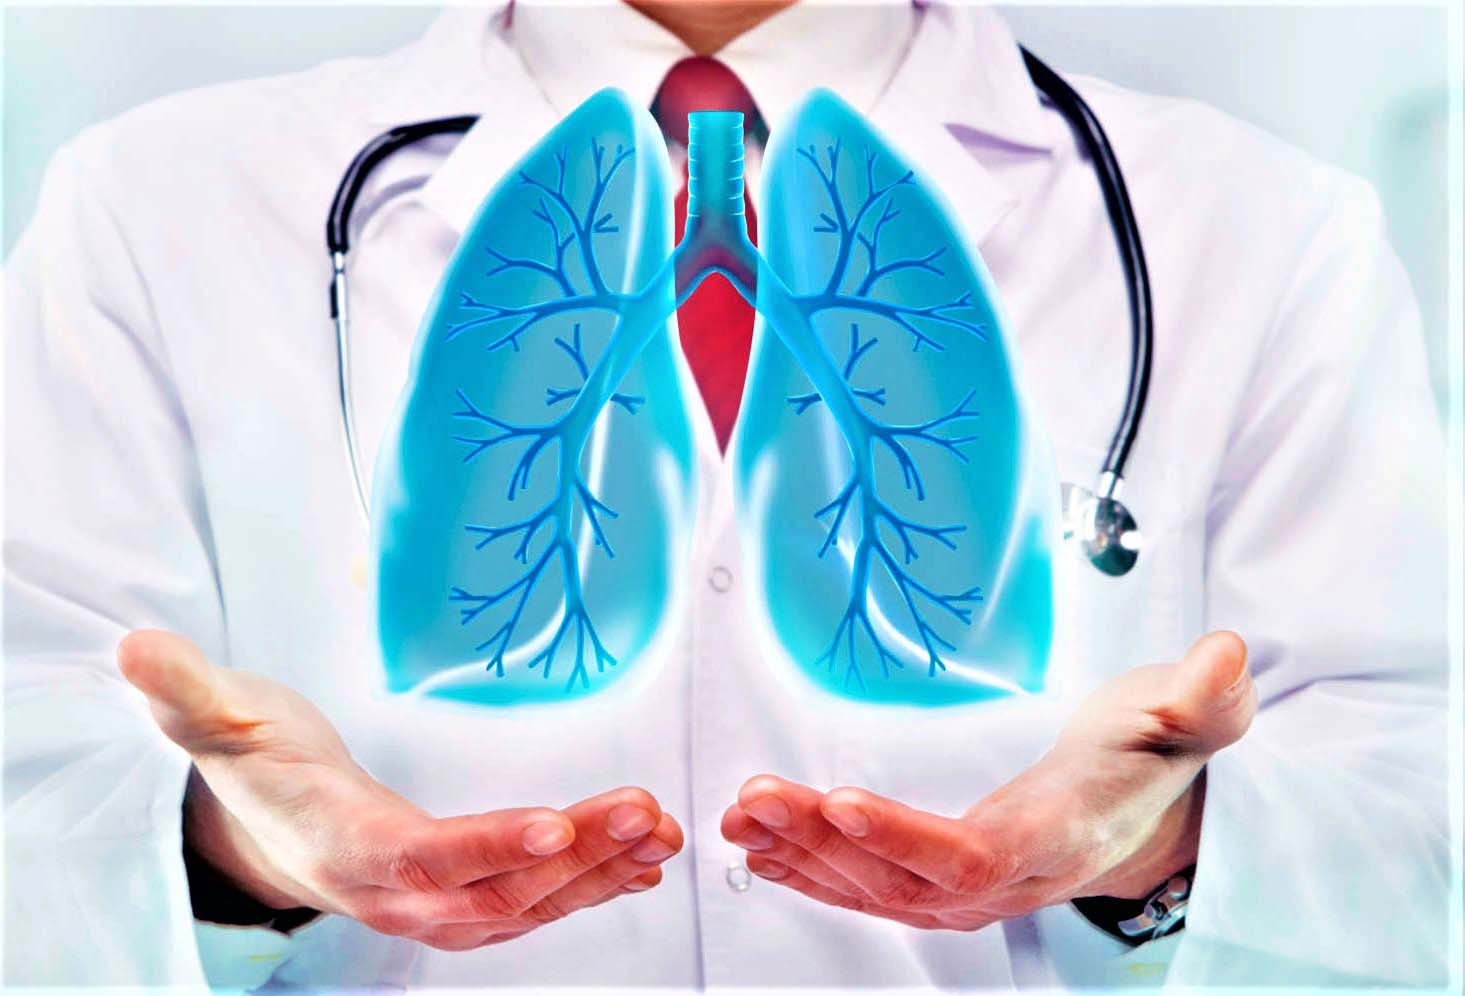 Ответы к тестам НМО: "Использование дыхательных тренажеров для профилактики пневмоний"